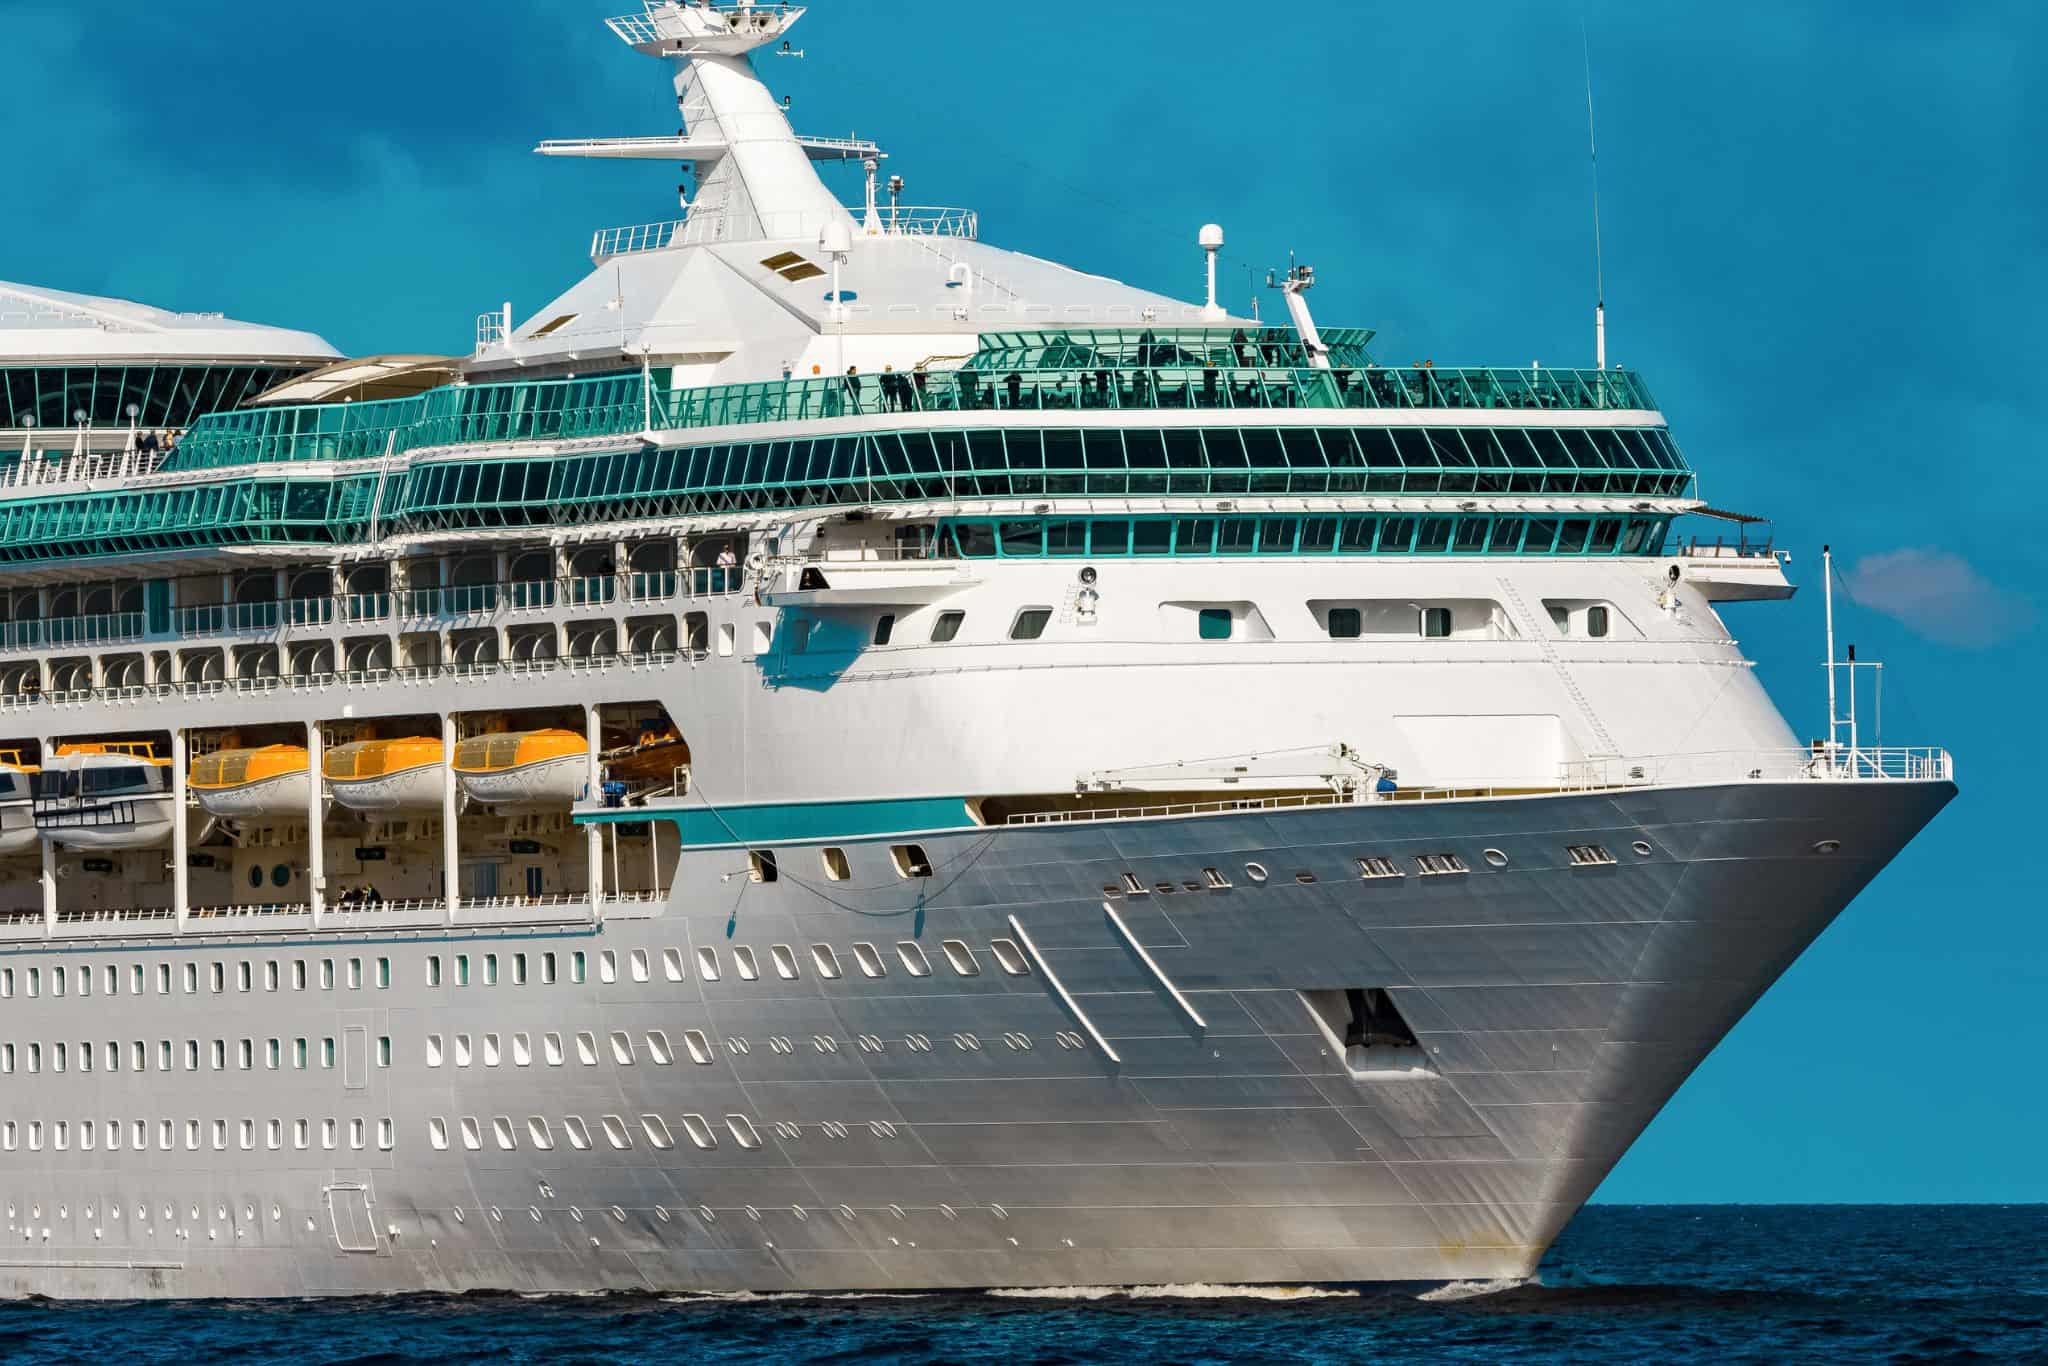 Cruise ship ocean liner